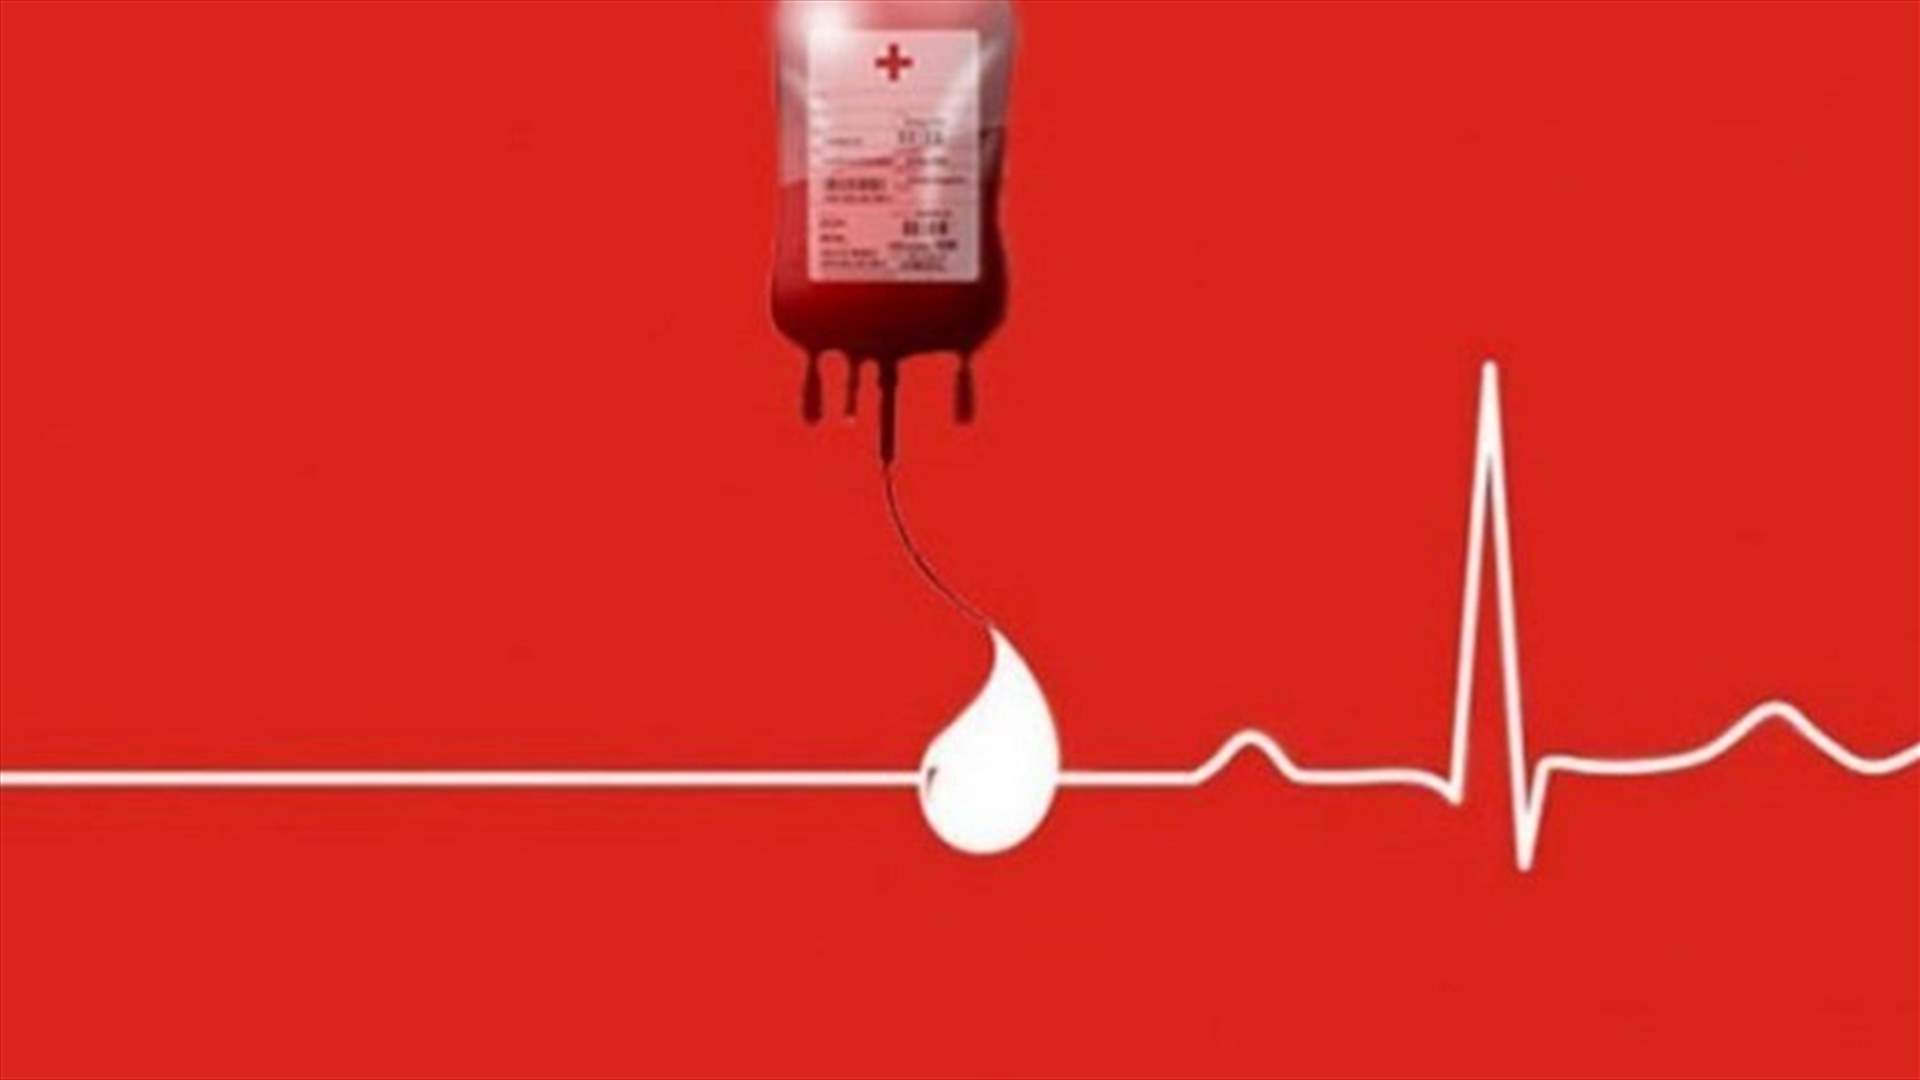 مريض بحاجة ماسة الى بلاكيت دم من فئة  O+/O في مستشفى ابو جودة في جل الديب. للتبرع: 71366612